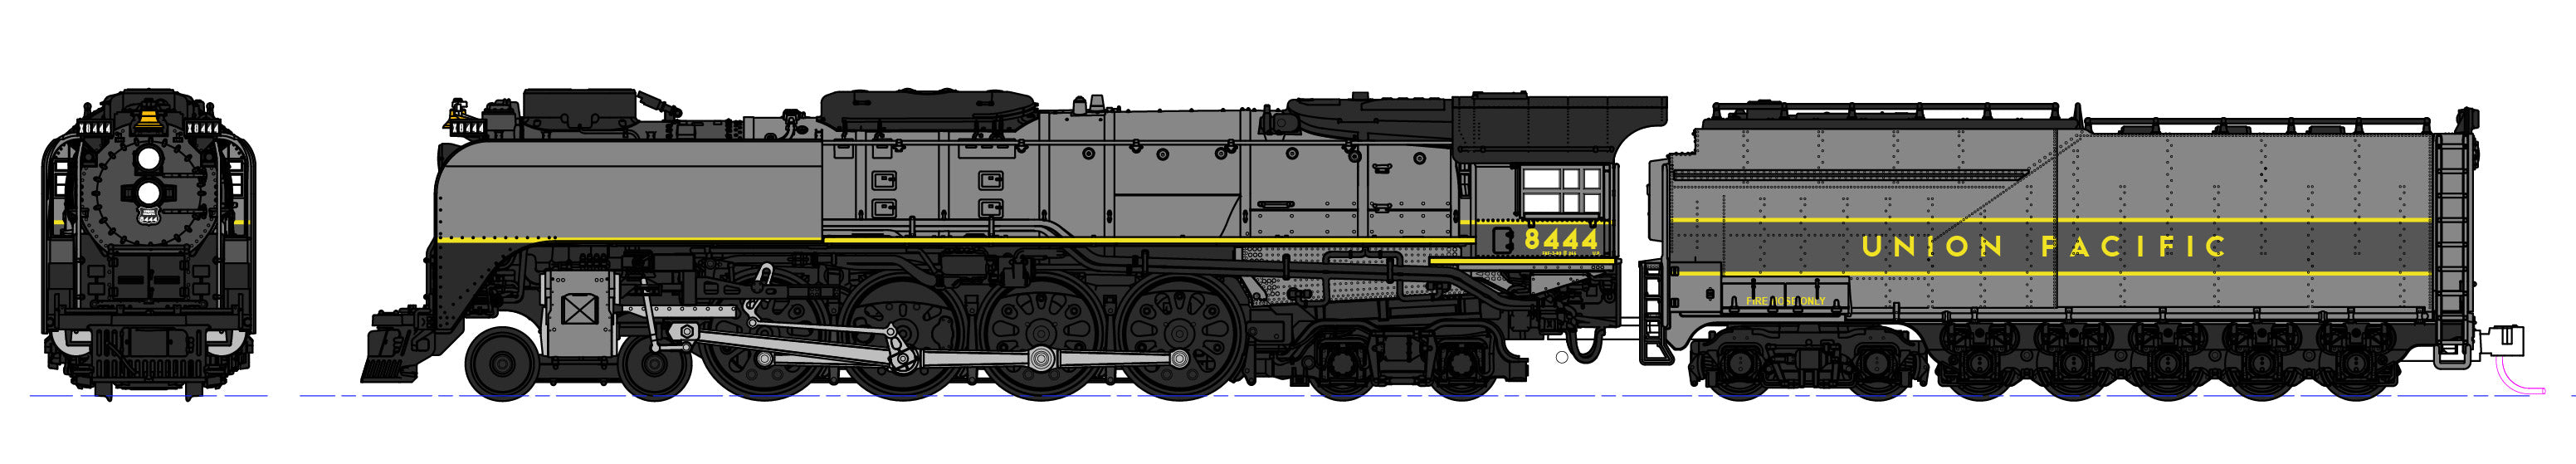 KATO 126-0403 N Scale Union Pacific FEF-3 4-8-4 Steam Loco UP 8444